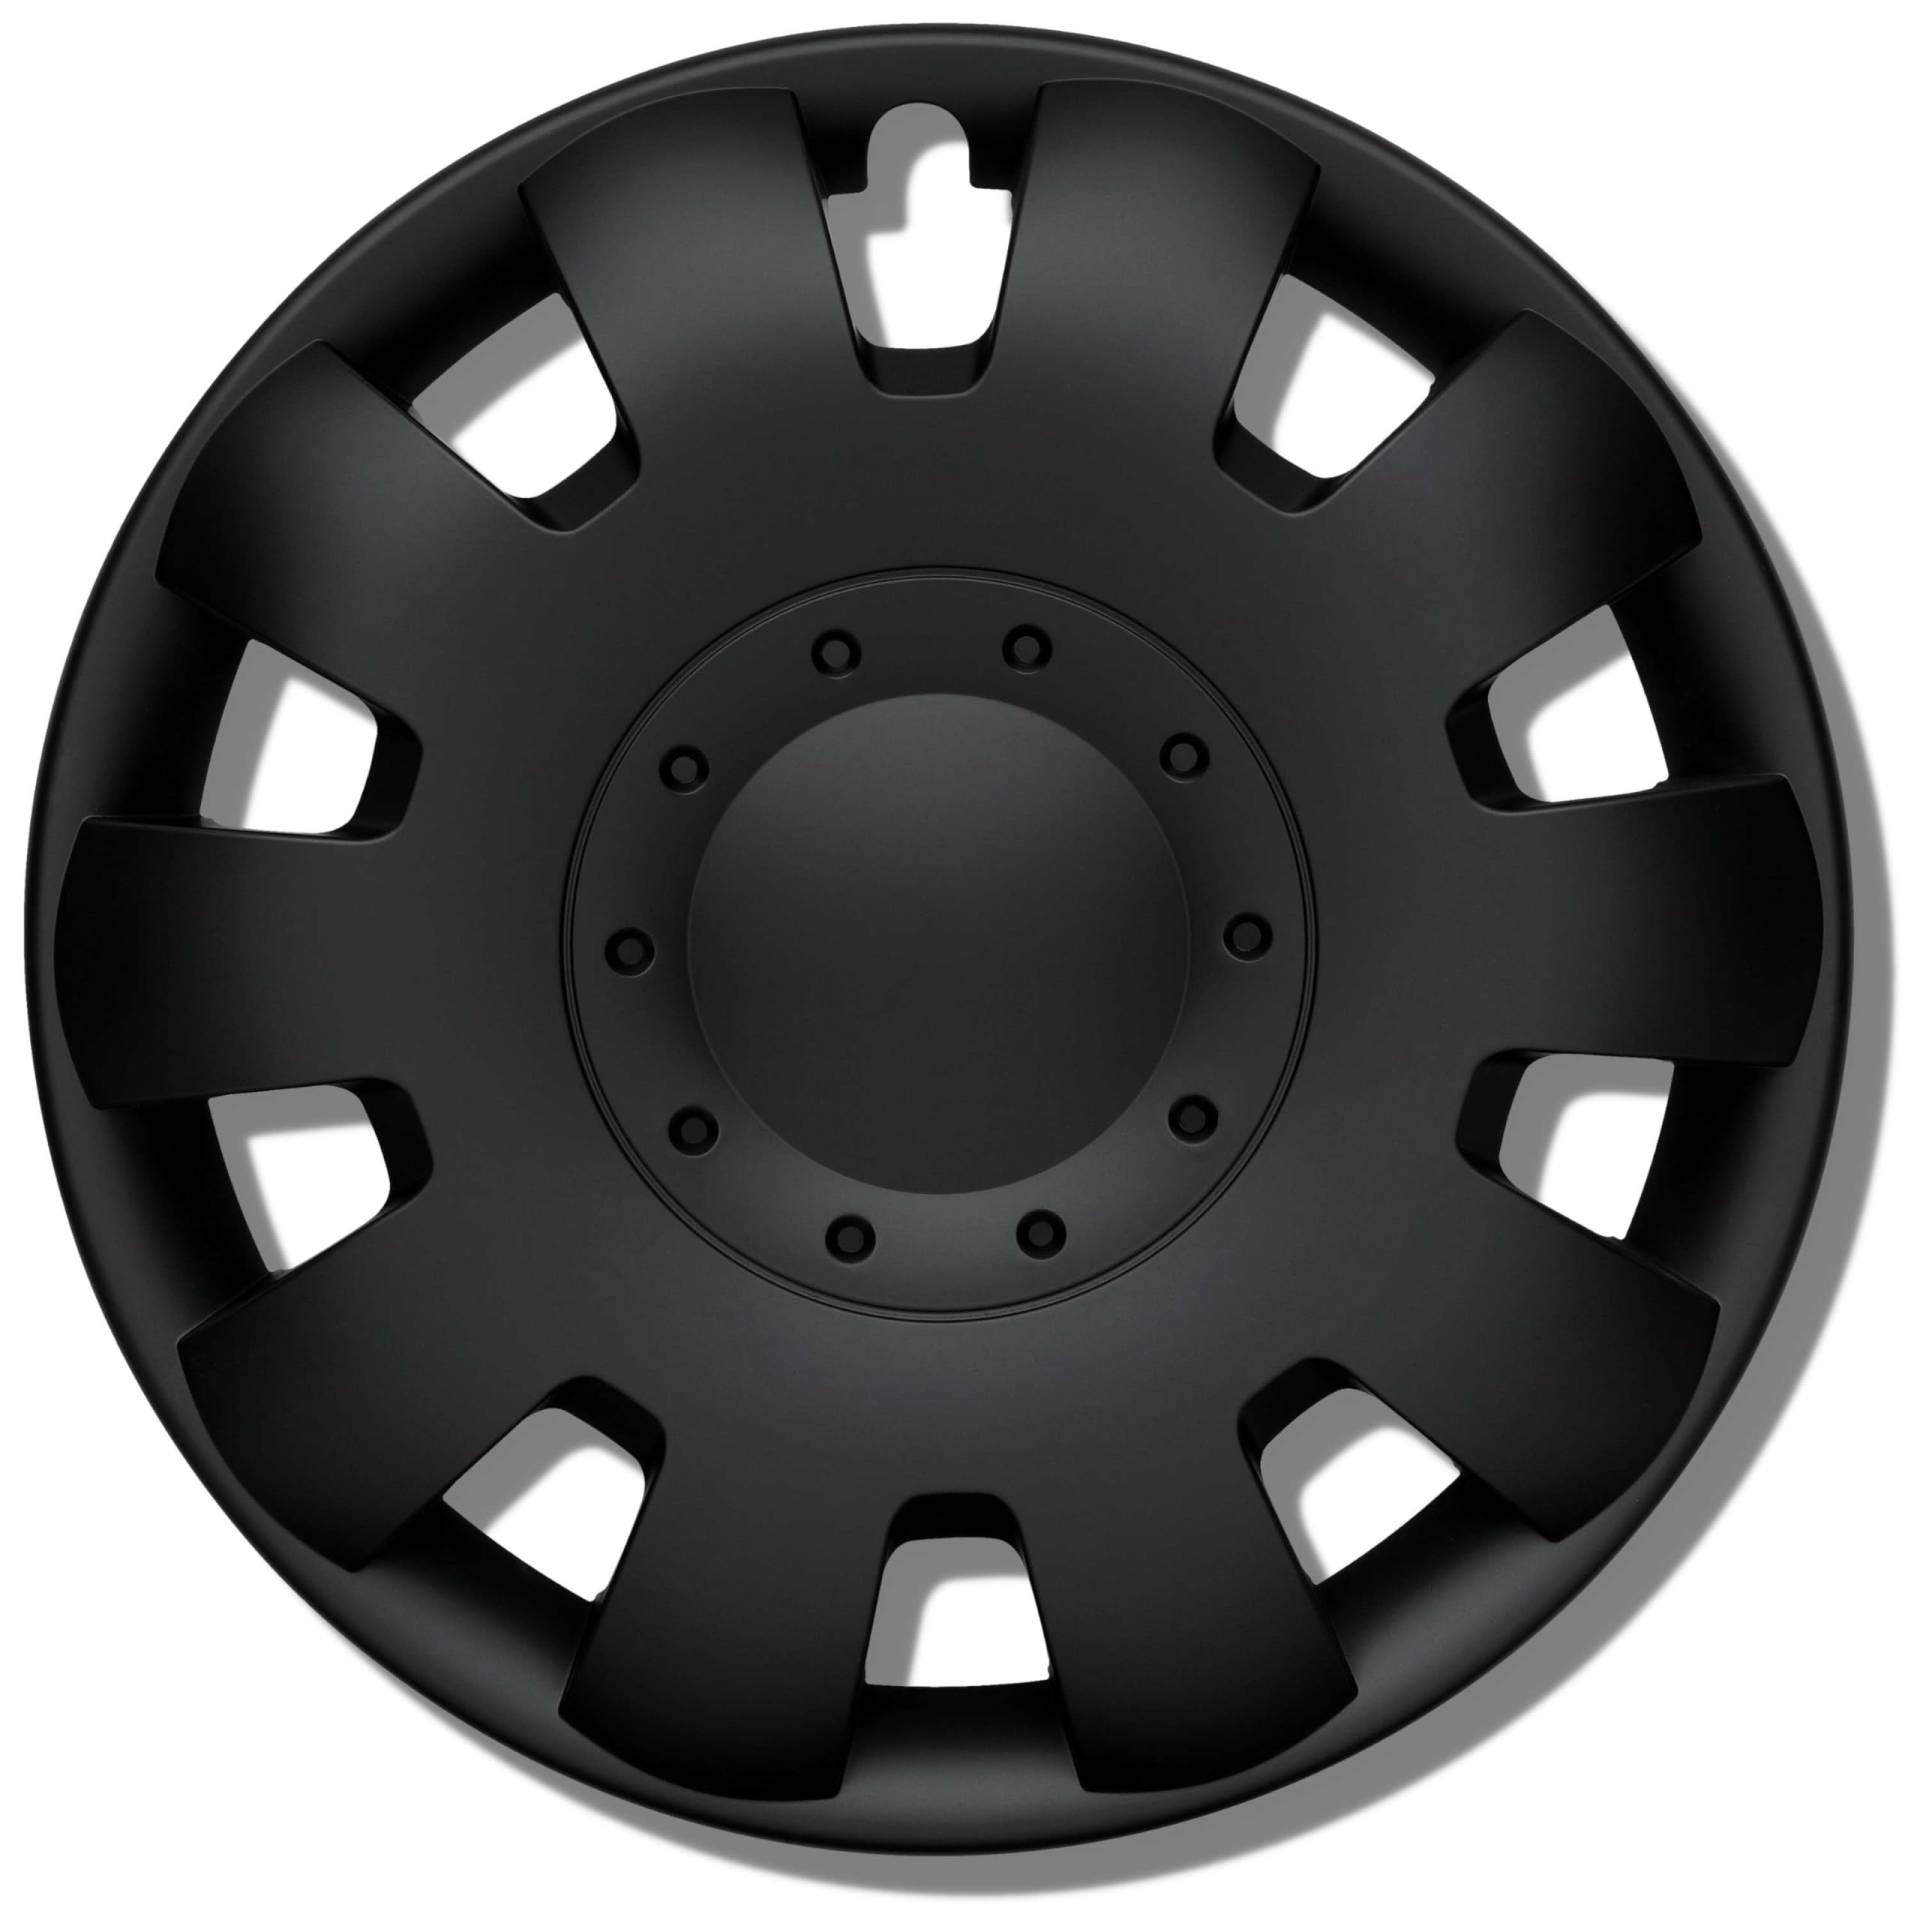 Radkappen 13 Zoll schwarz matt Erstausrüster Qualität aus robustem Kunststoff Neptun 4 Stück Radzierblenden für Stahlräder - Radblenden 4er Set für Stahlfelgen - Europäische Produktion von Kuglo